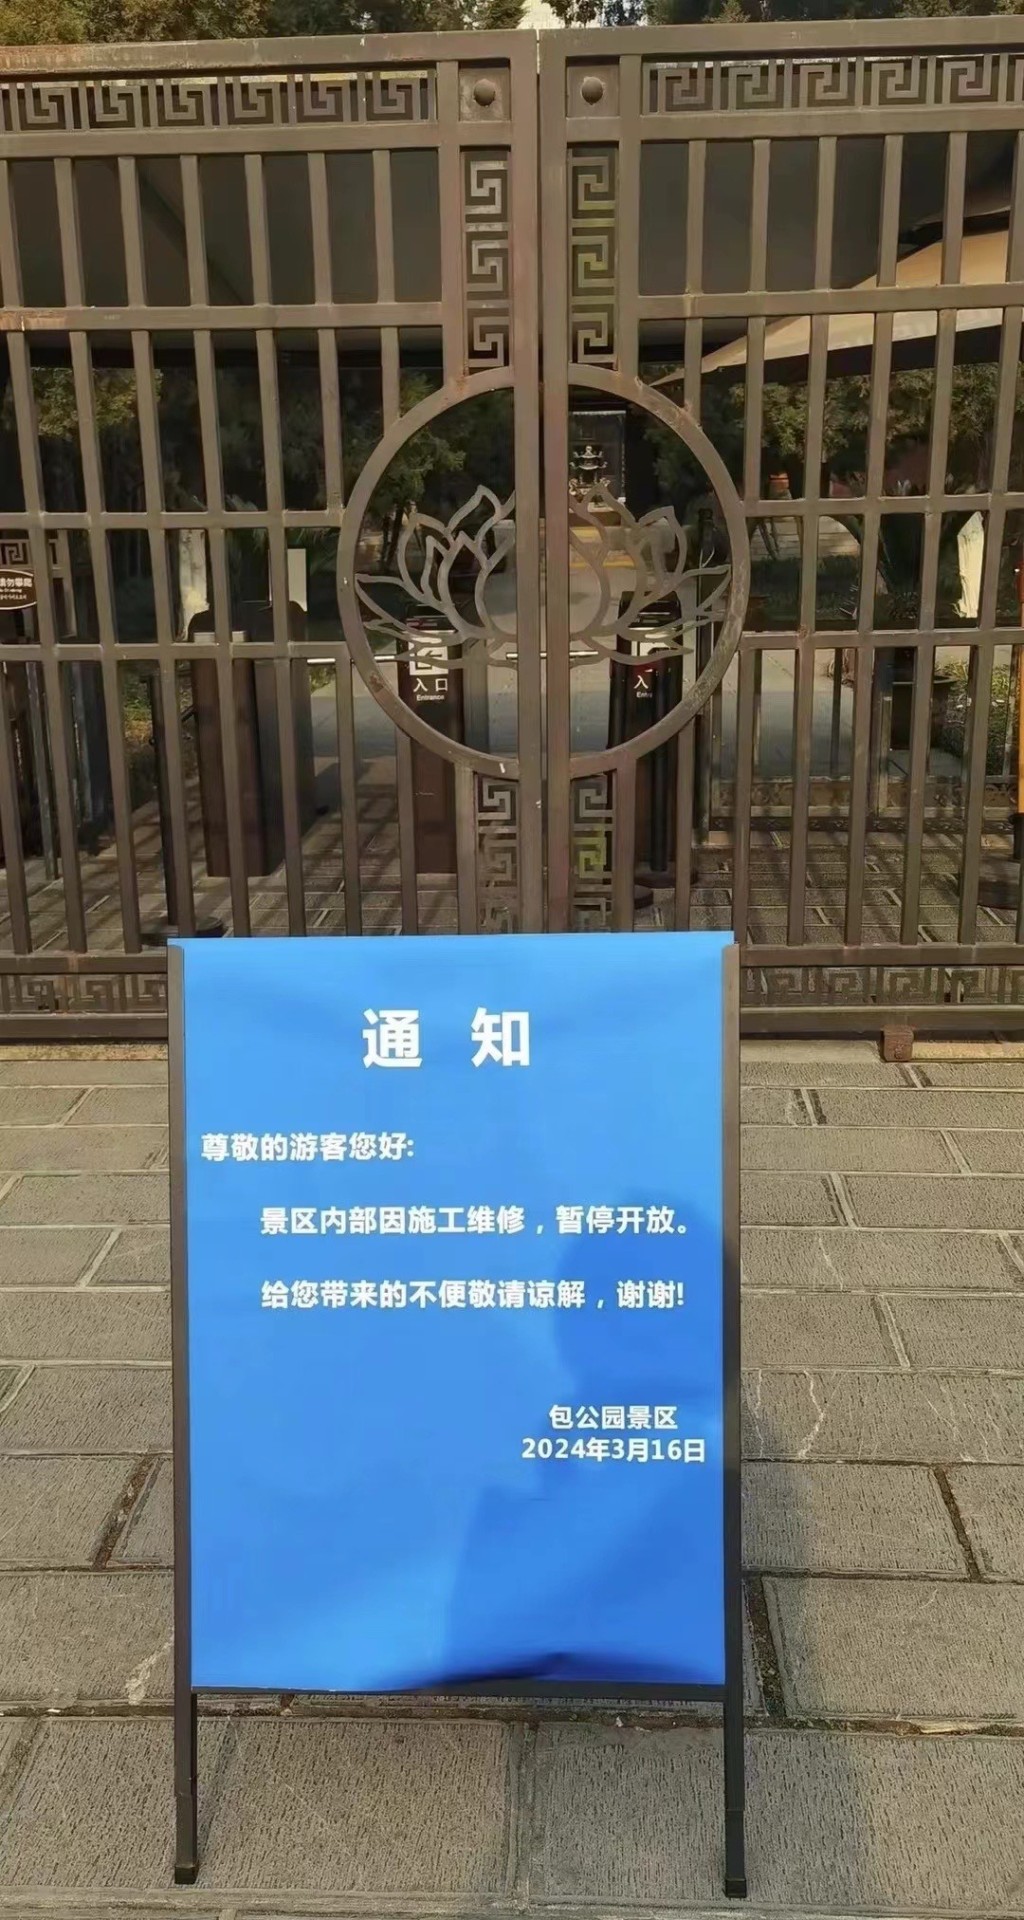 包公祠称因工程而要暂停开放。